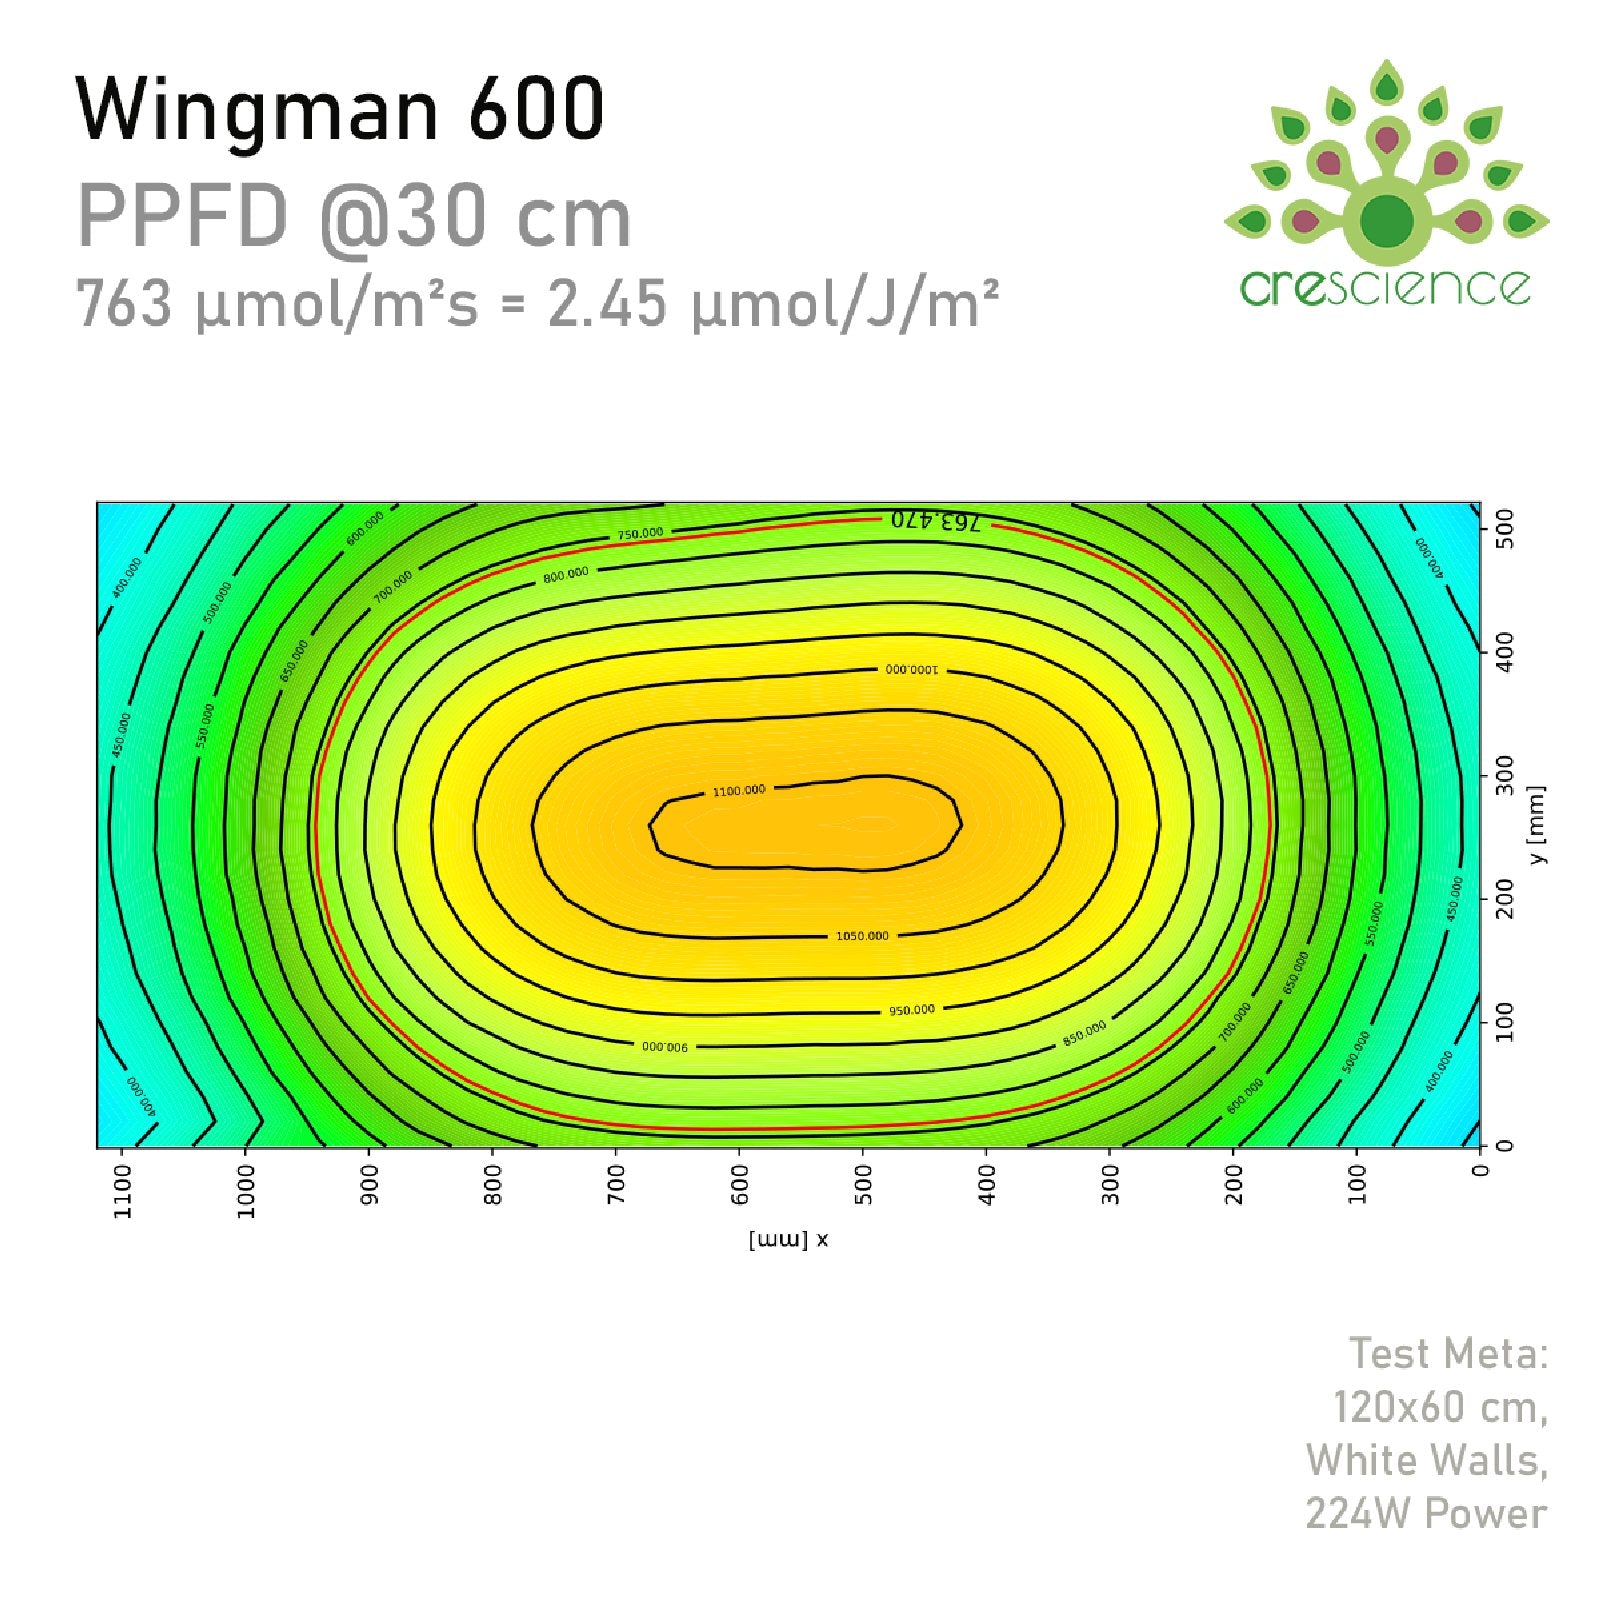 PPFD-Verteilungsdiagramm des Crescience Wingman 600 bei 30 cm Abstand, zeigt Lichtintensität.